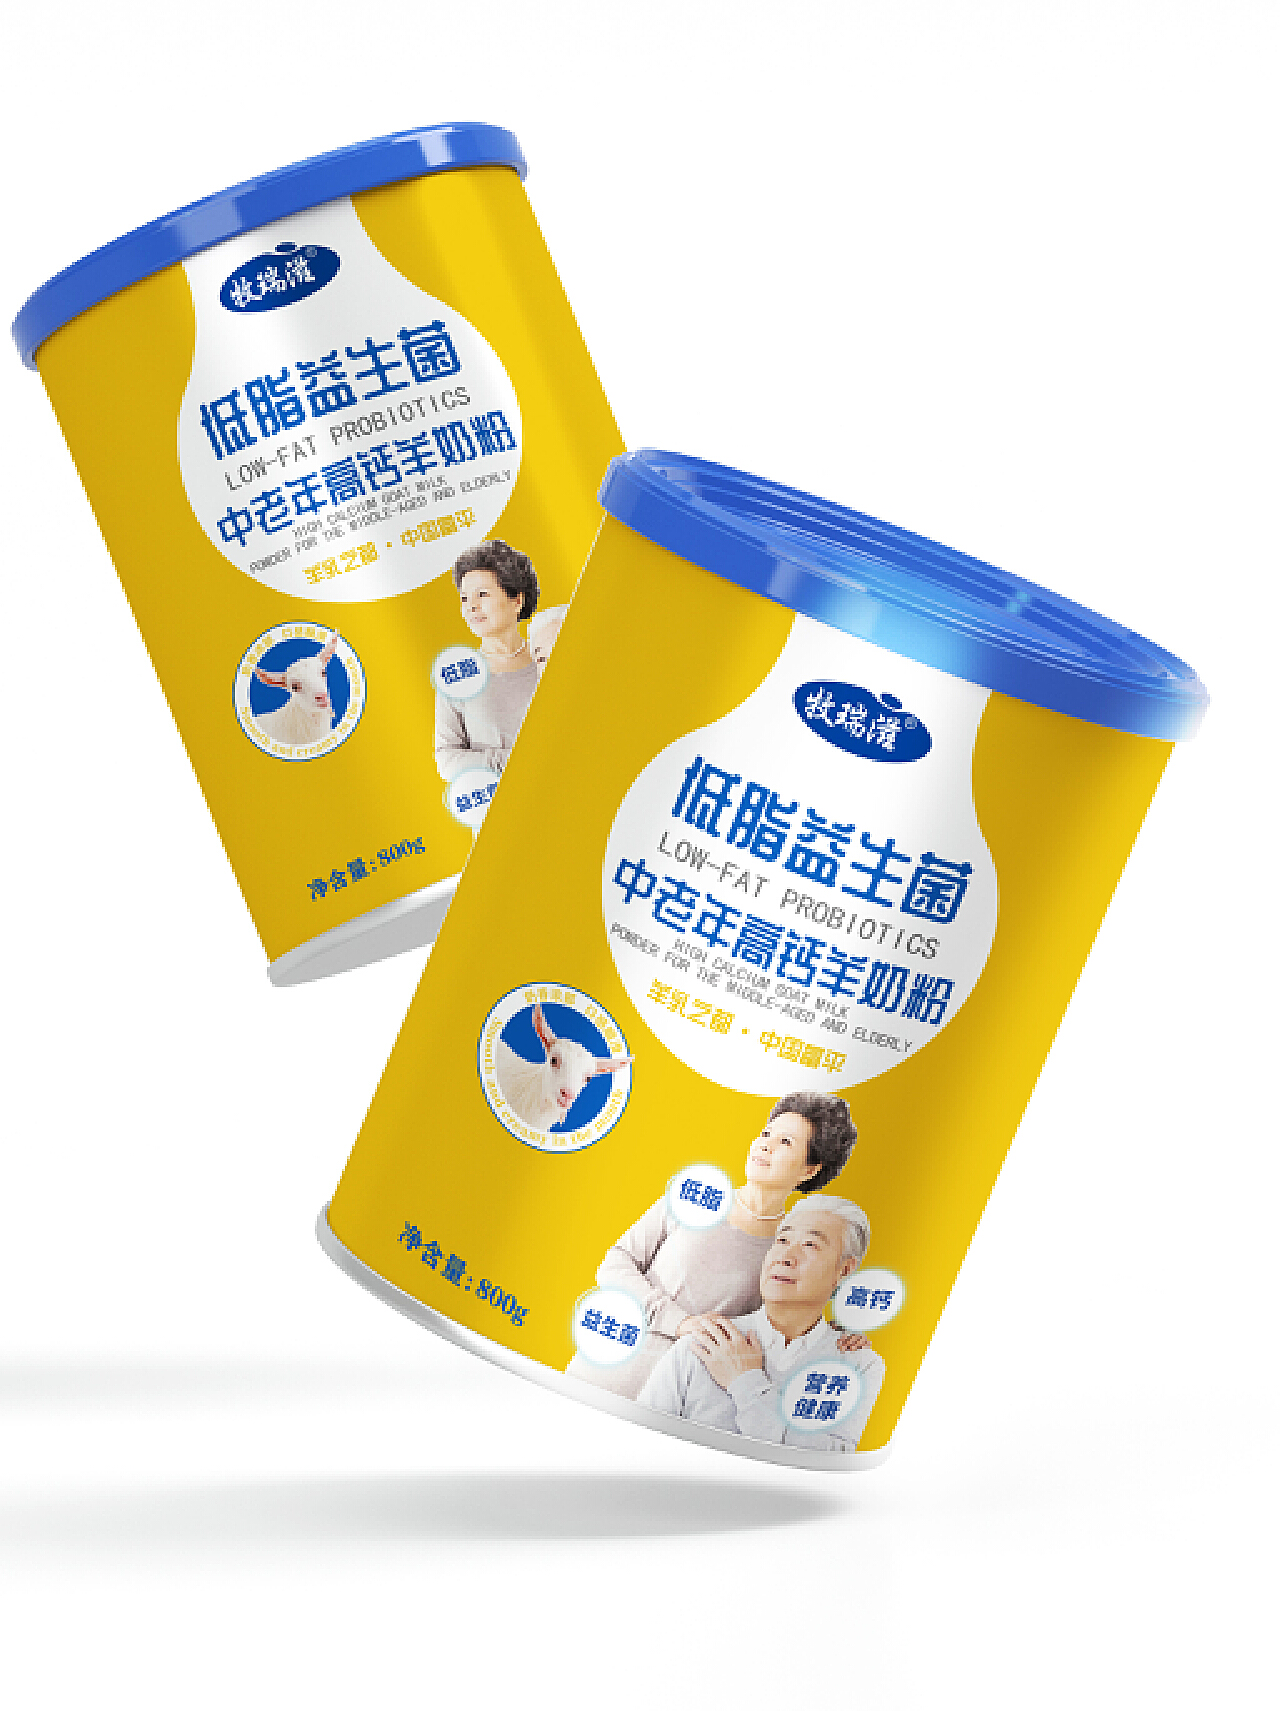 樂活LF儿童成长配方奶粉 | 初 · 品 | 用全球好资源，造中国好奶粉